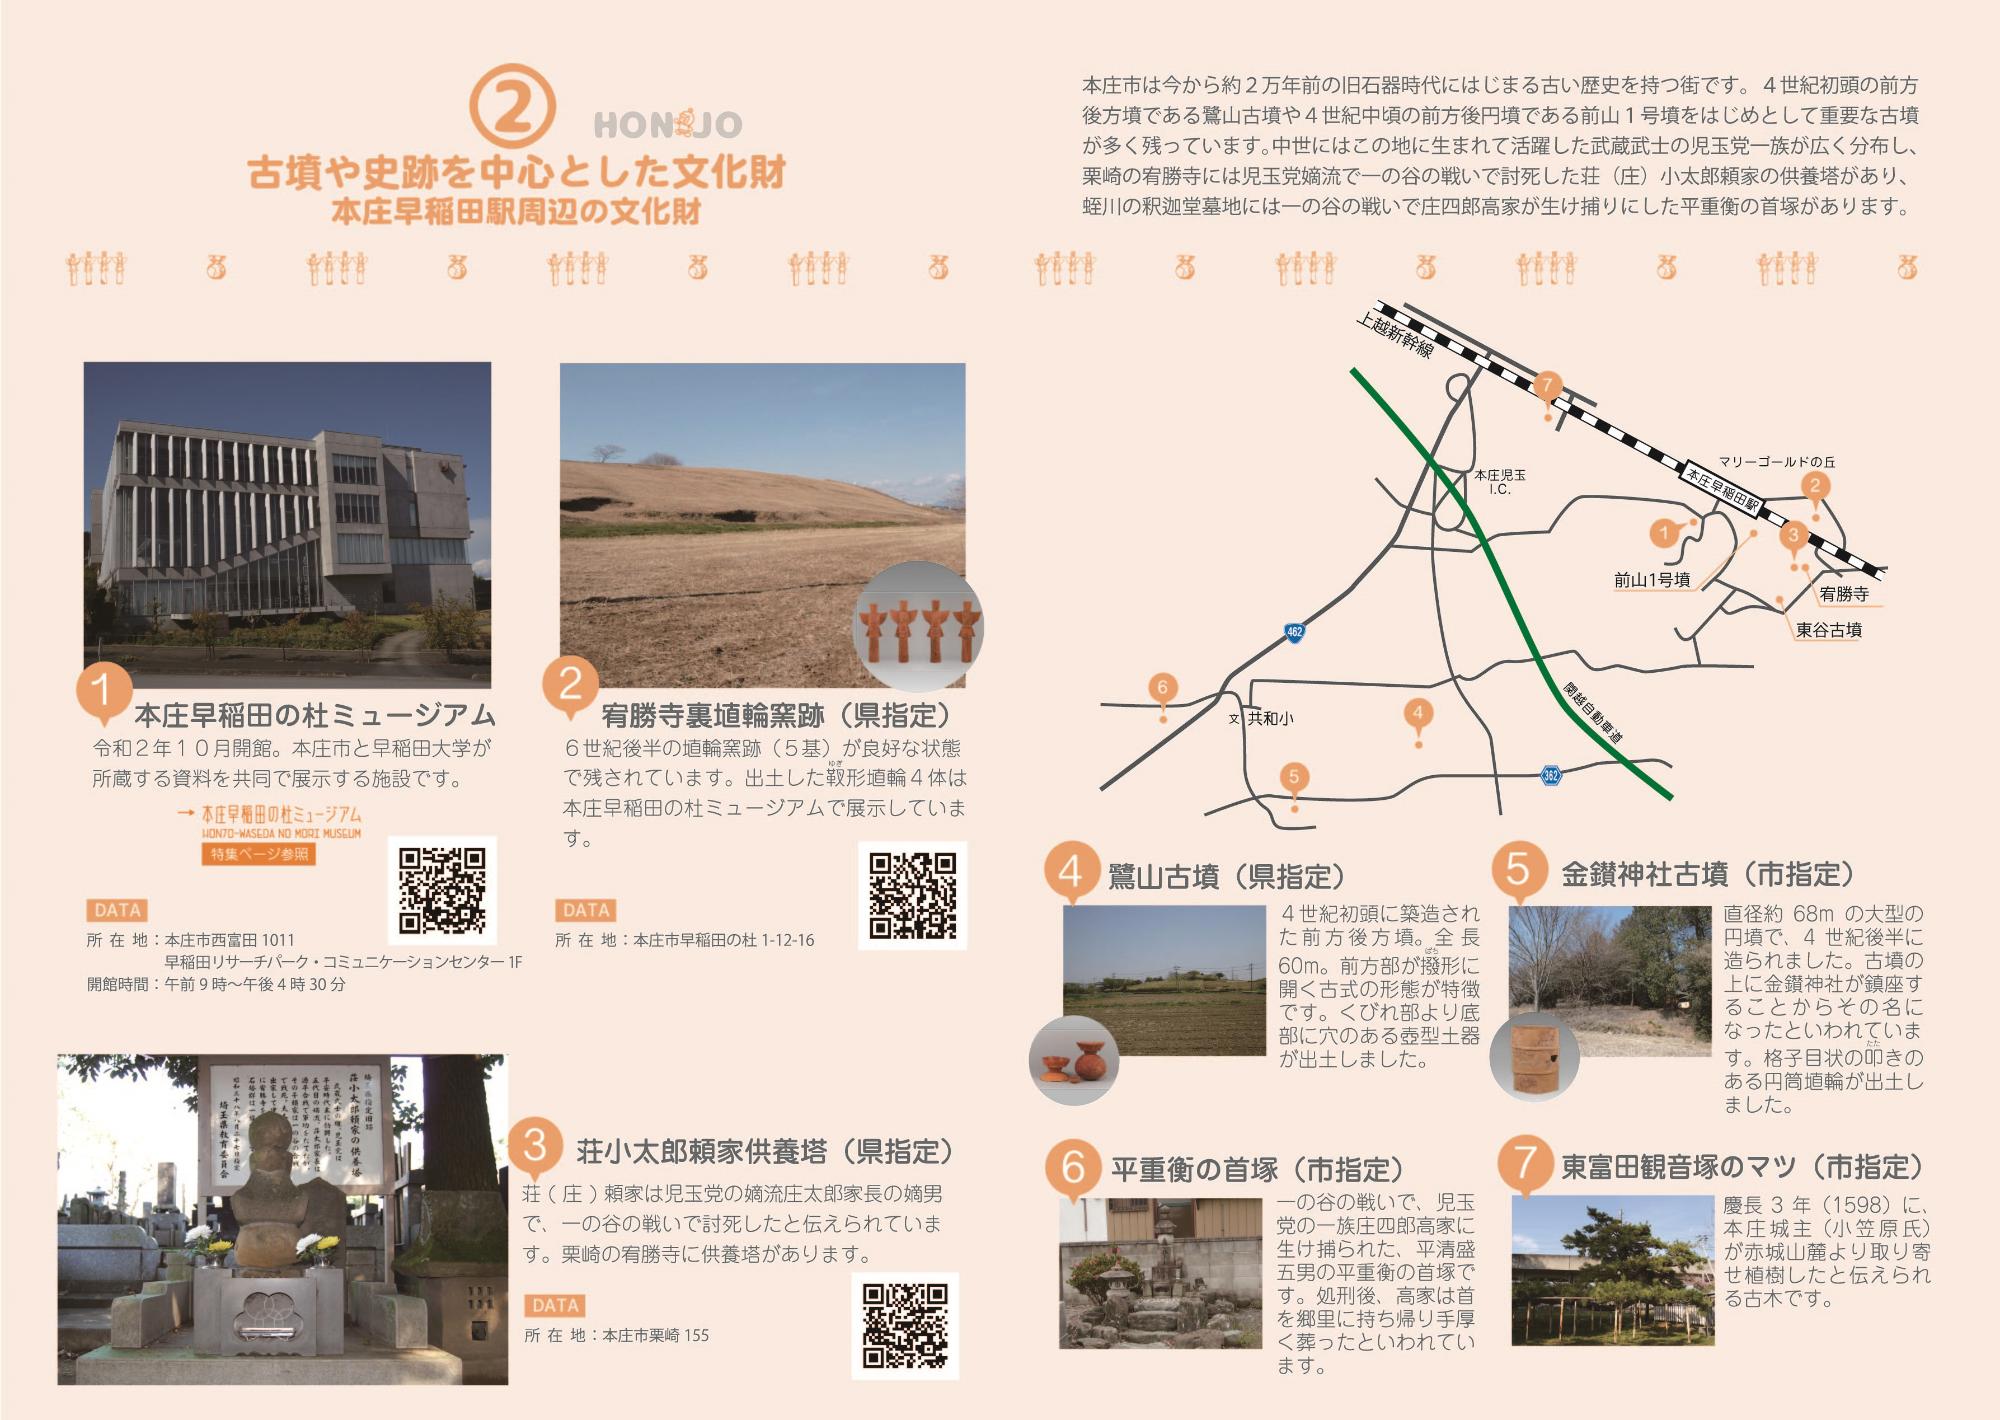 ほんじょう文化財ガイドマップP8-P9